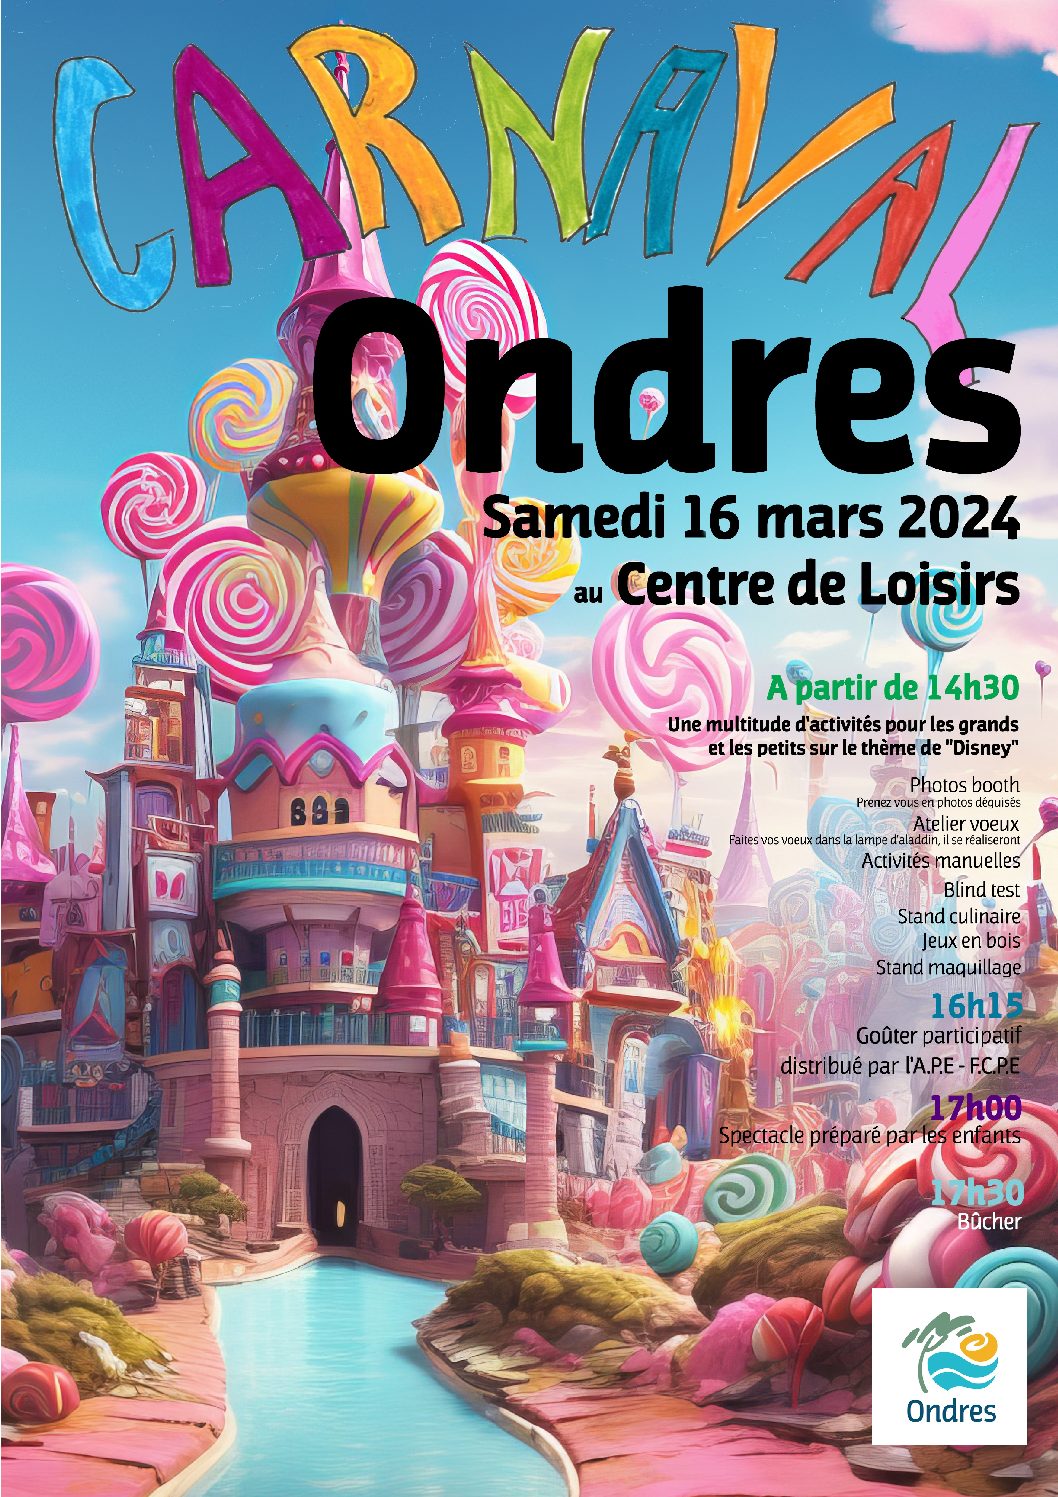 Carnaval du Centre de Loisirs 2024: la magie Disney!